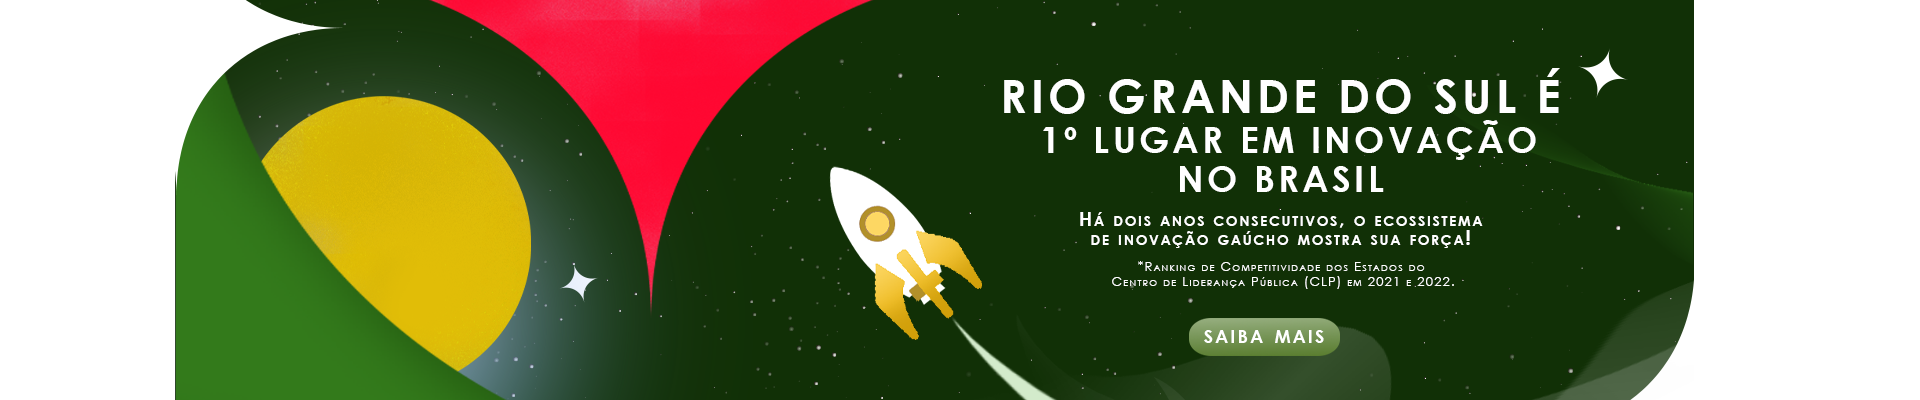 Rio Grande do Sul é 1º lugar em inovação no Brasil